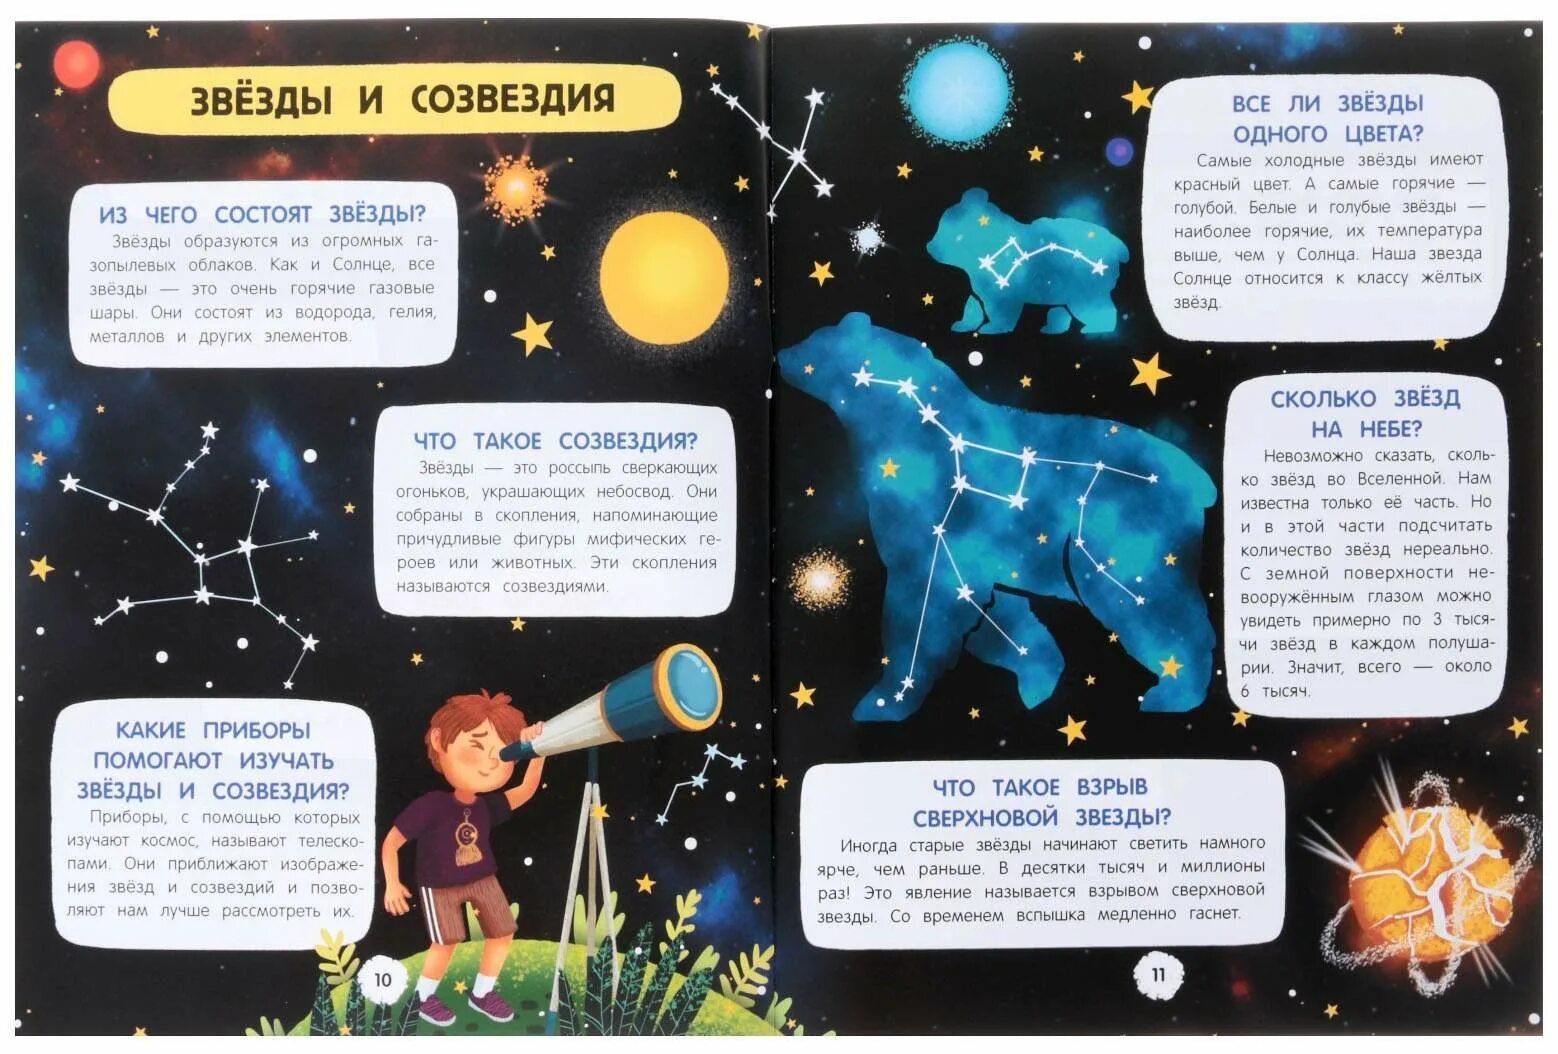 Интересные факты о космосе. Интересные факты о космосе для детей. Интересное о космосе для детей. Интересные истории про космос.